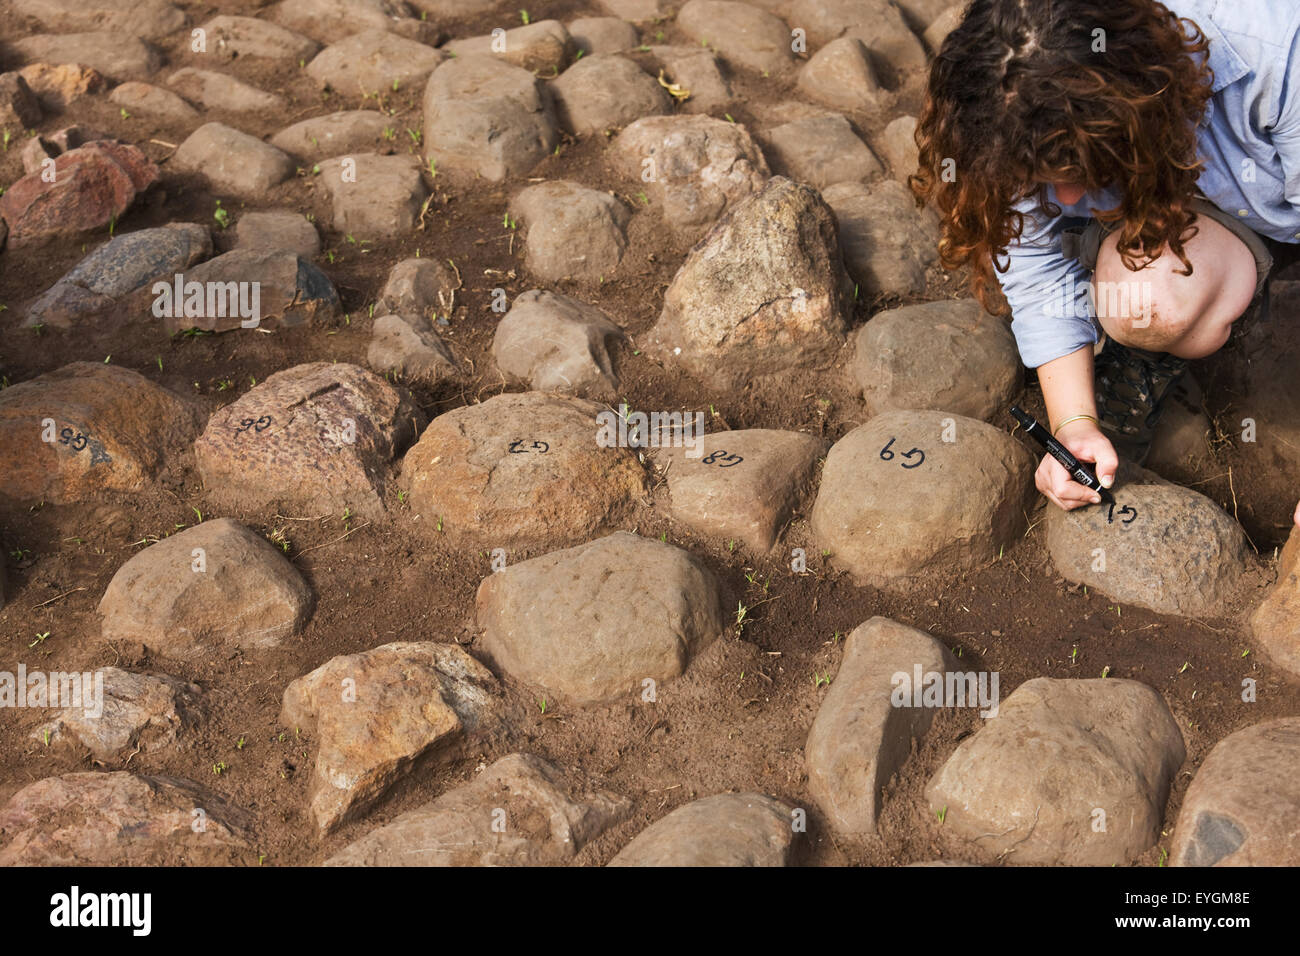 Au sud ouest de l'Ethiopie, vallée de l'Omo, dans le sud de l'Mursiland, femme l'écriture des chiffres de pierres ; Dirikoro kulugto première ailoche Banque D'Images